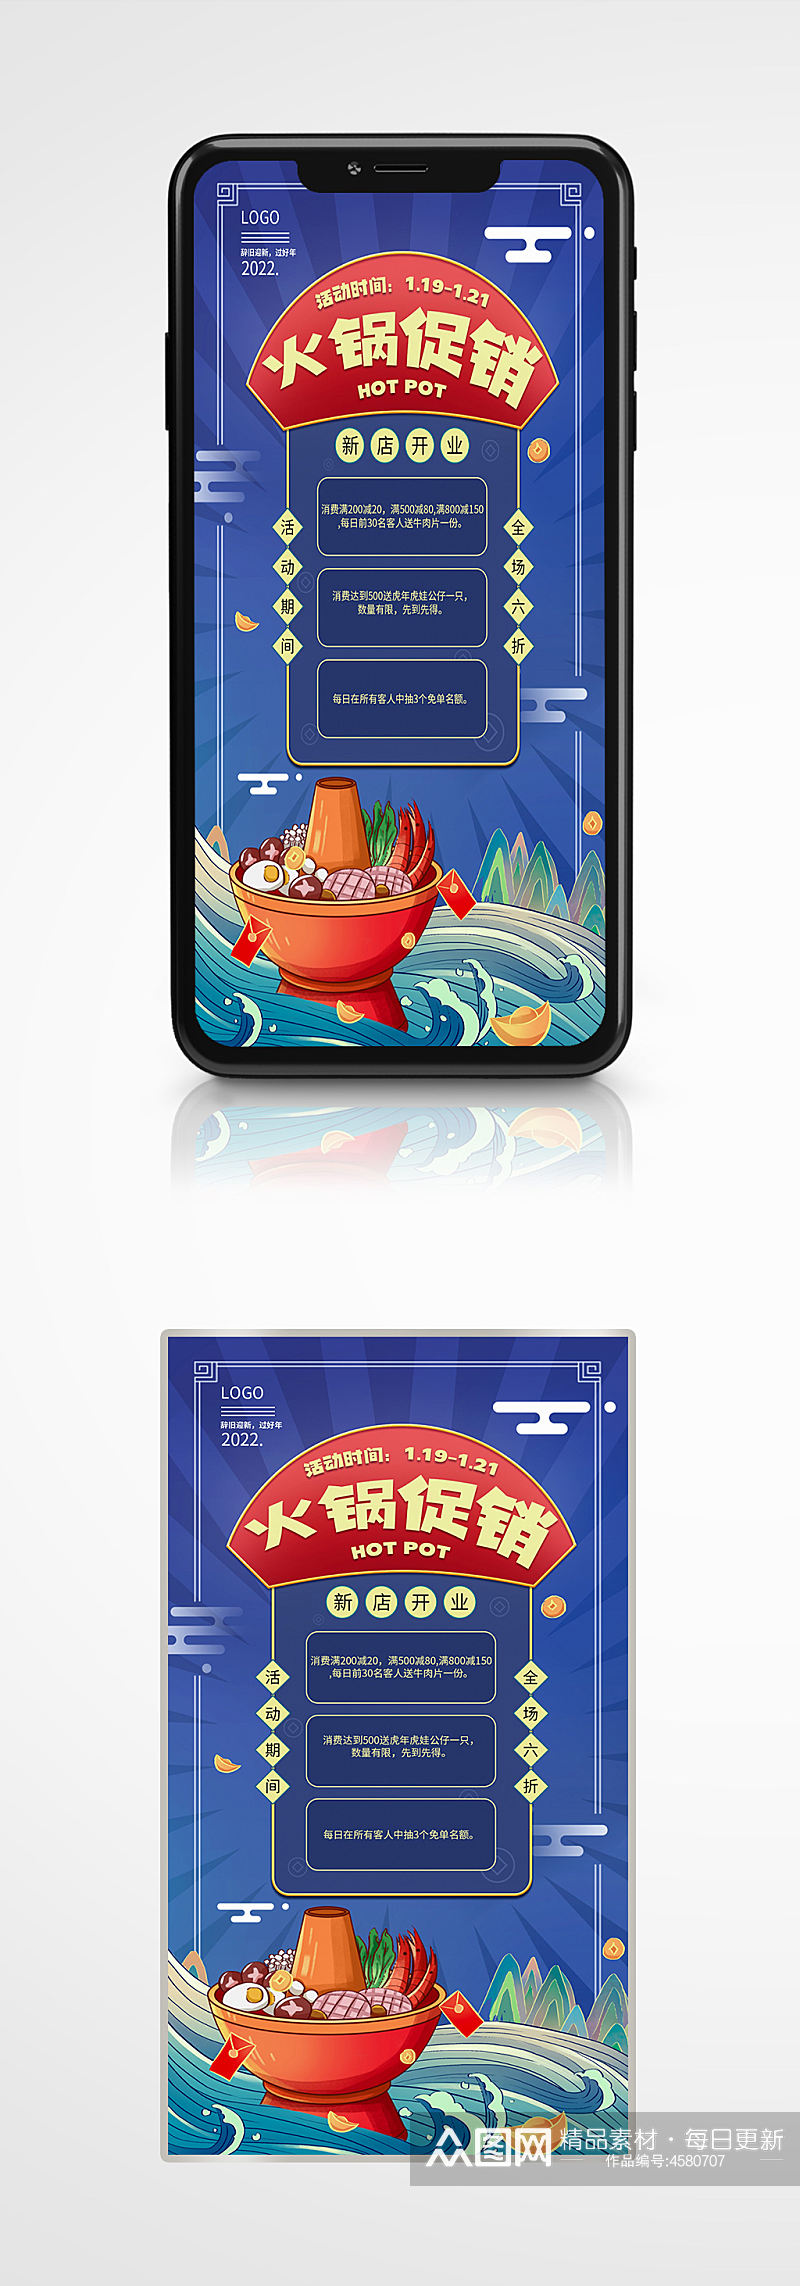 春节火锅促销手机海报蓝色餐厅手绘套餐素材